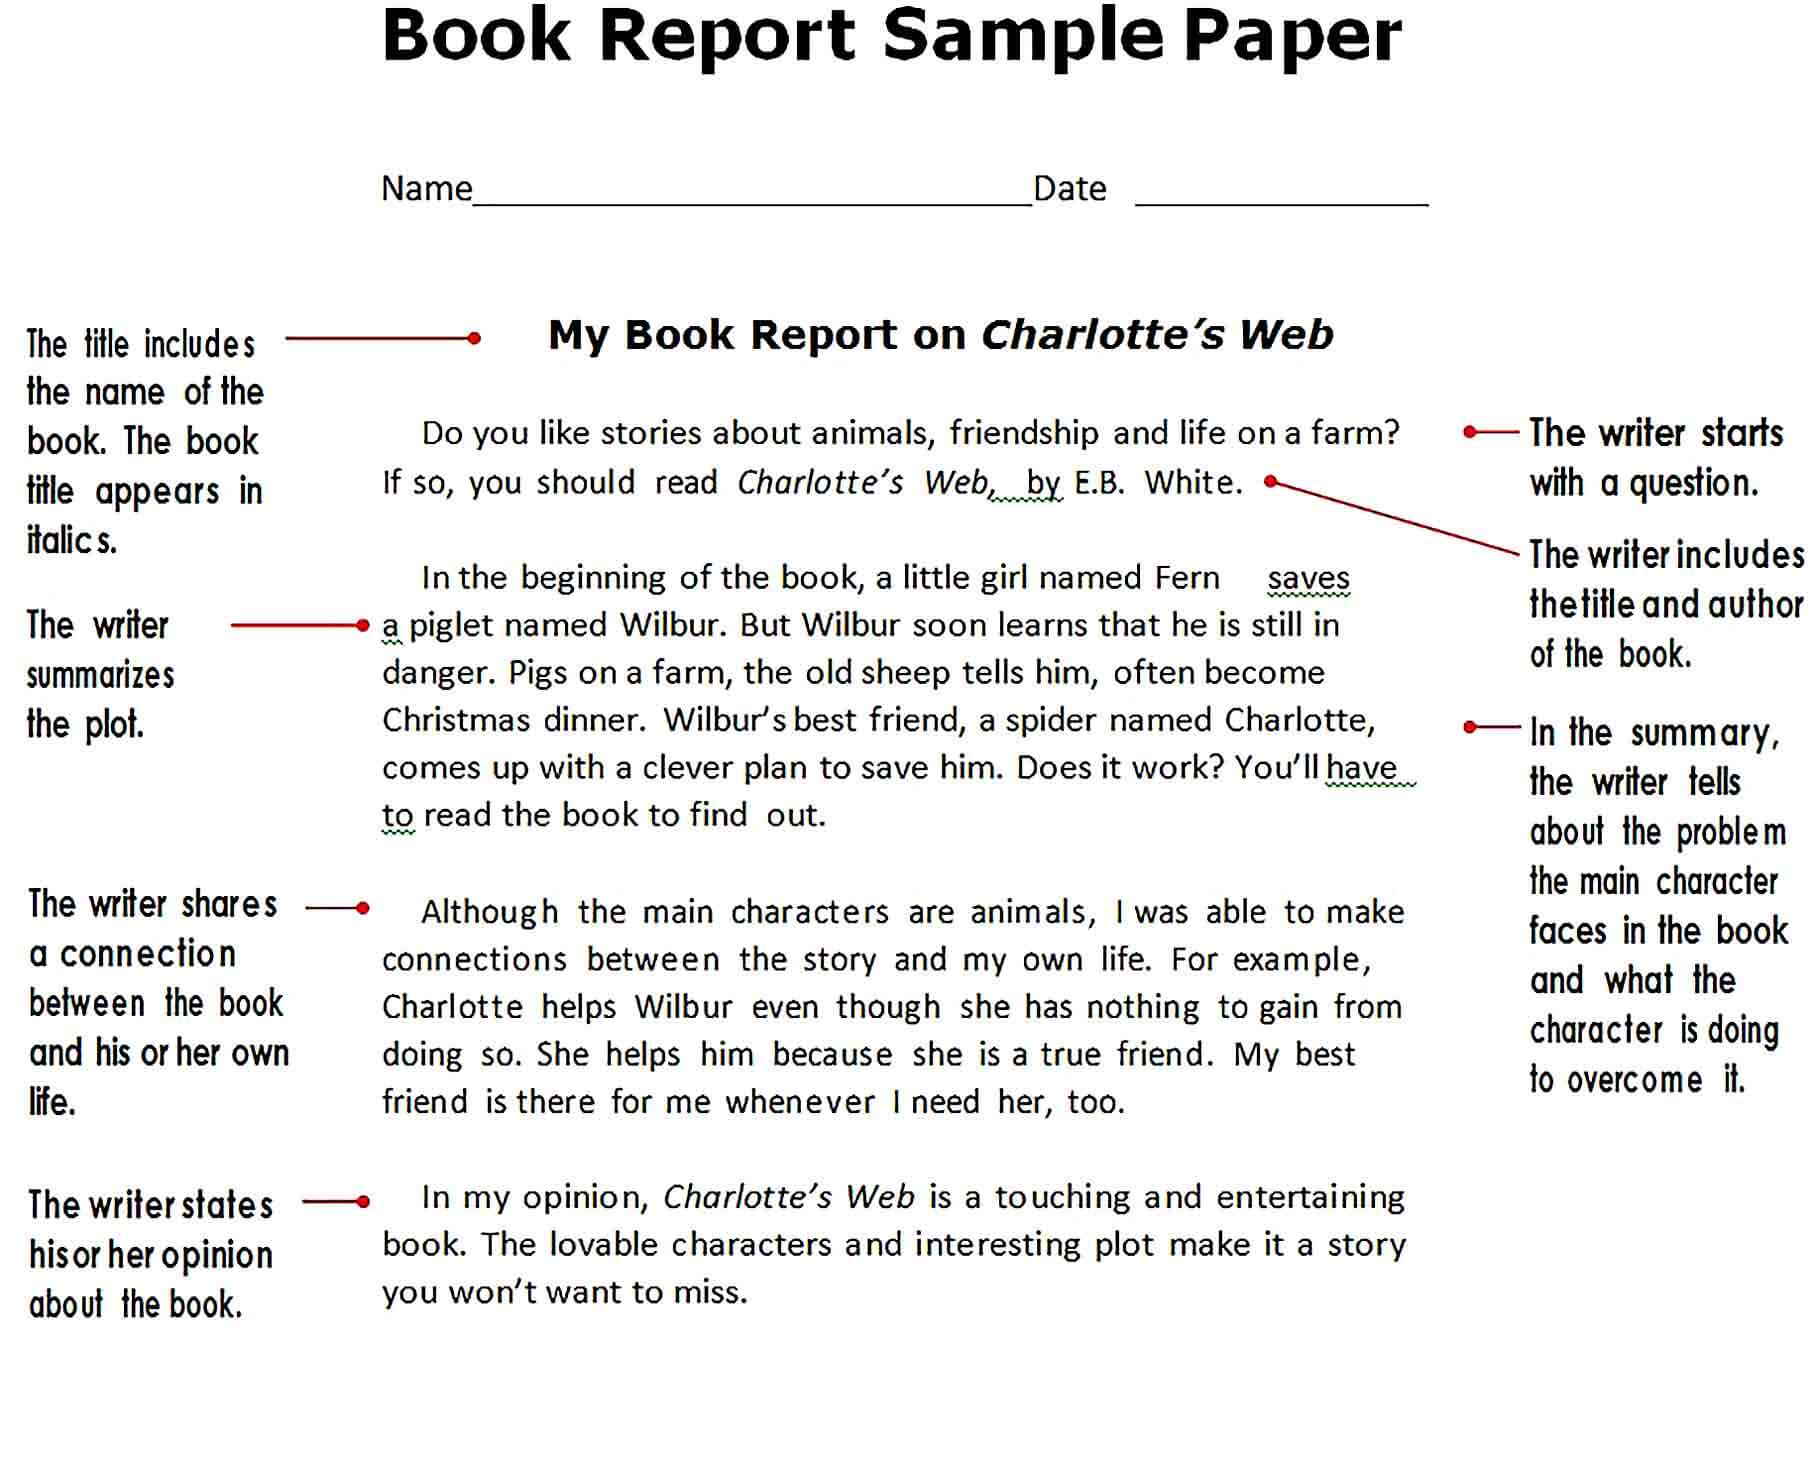 Sample Book Report Sample Paper Template